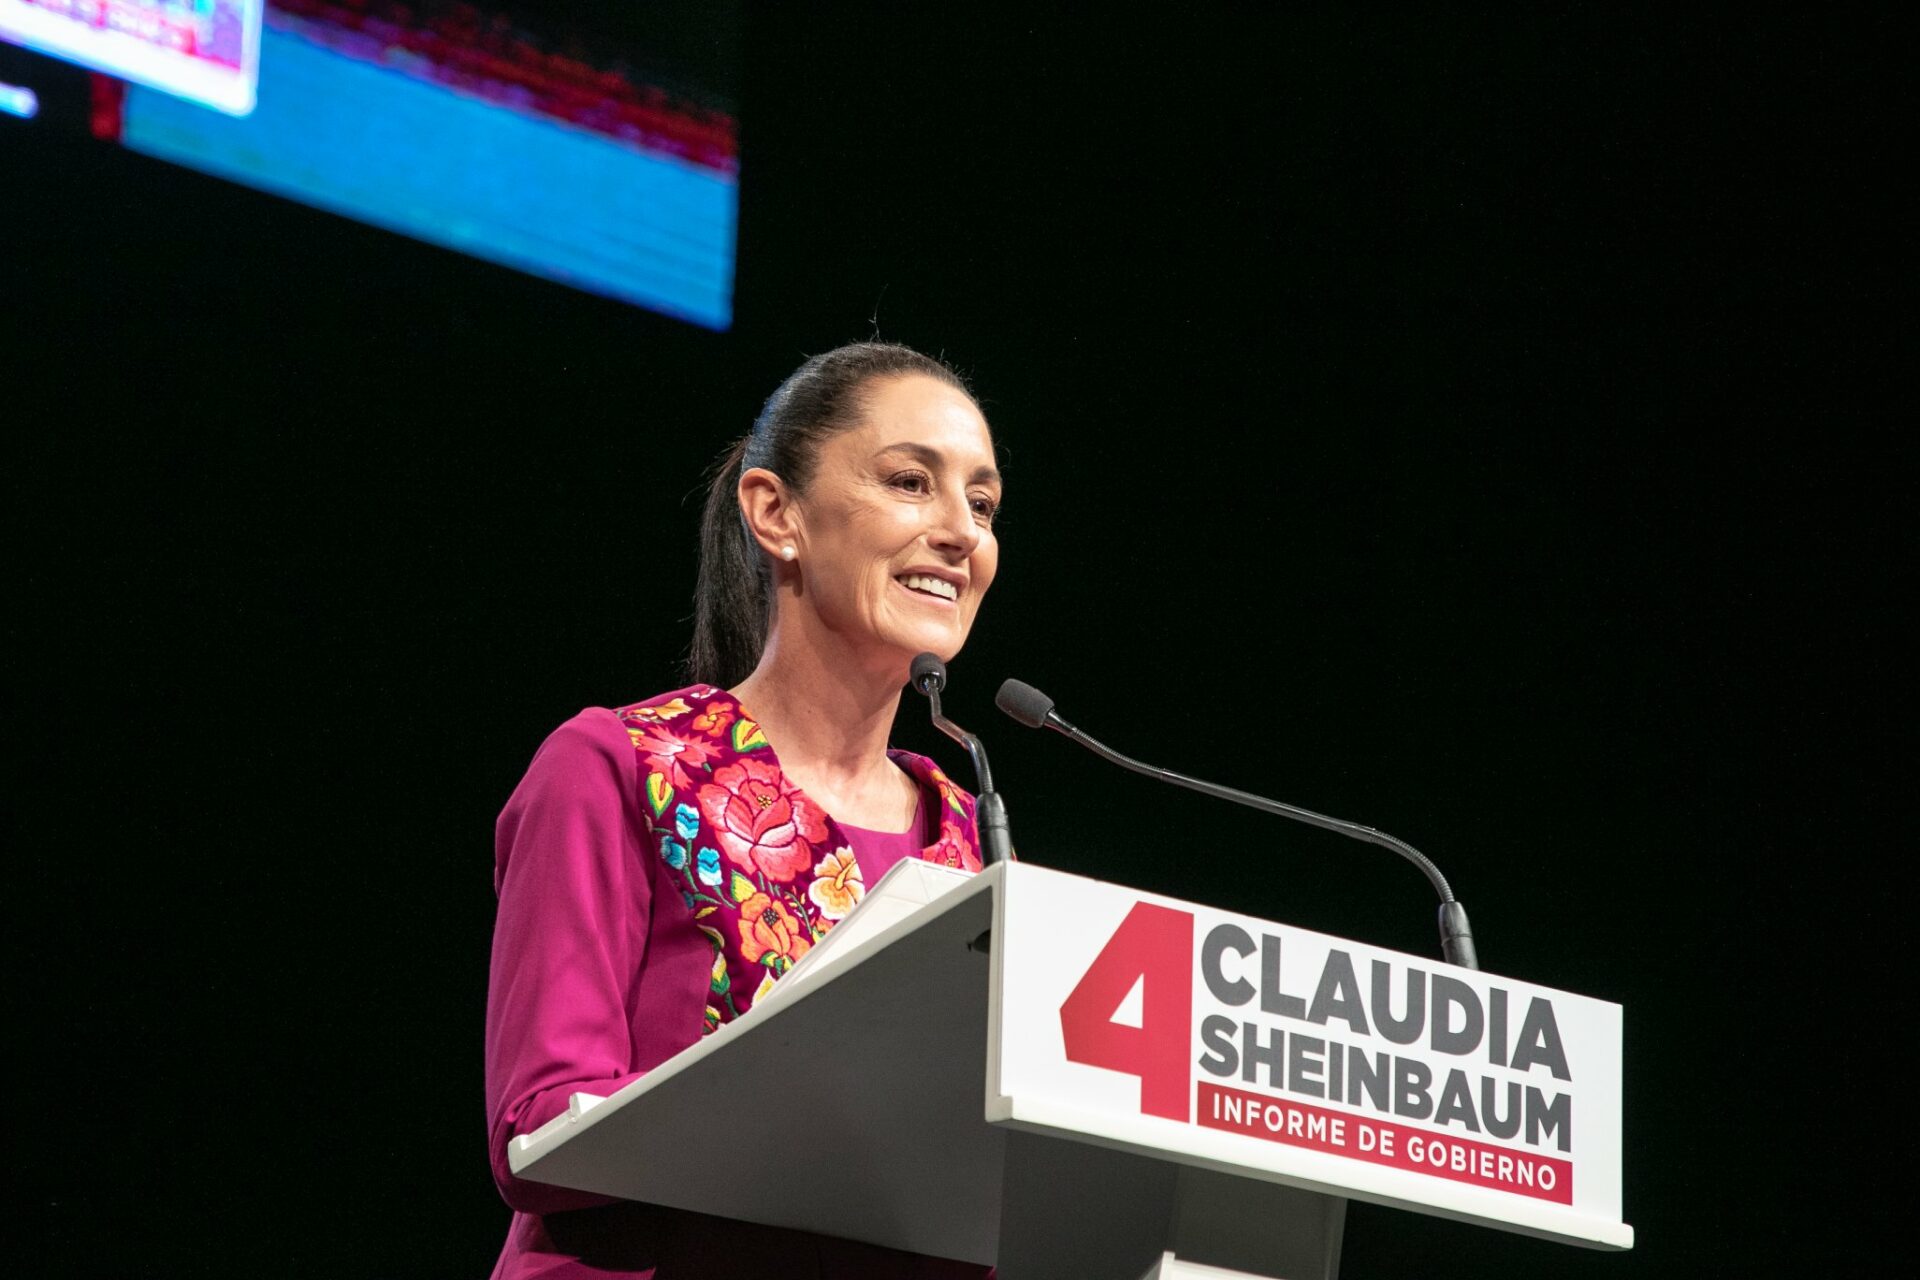 La-Lista de los logros de Claudia Sheinbaum, según su cuarto informe de gobierno.